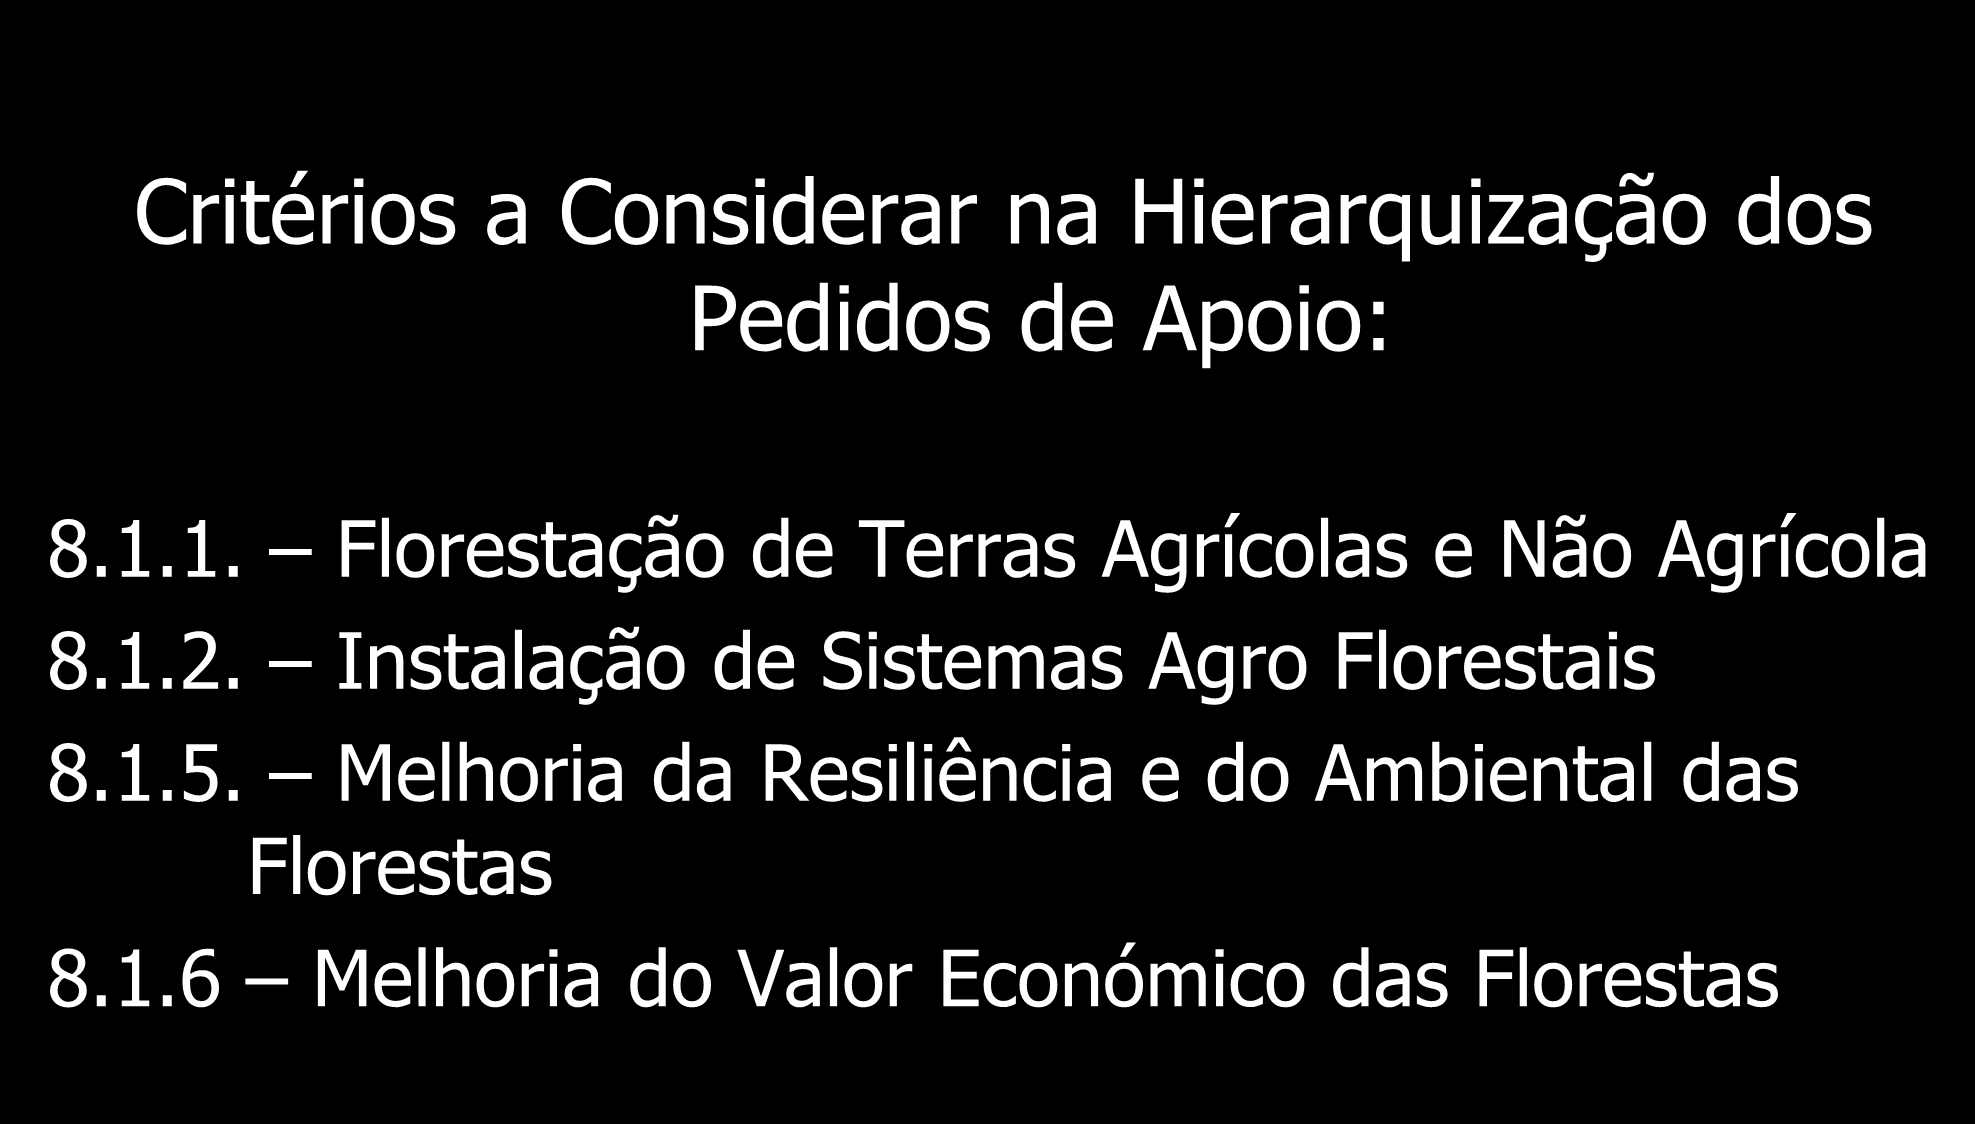 Hierarquização dos Pedidos de Apoio Critérios a Considerar na Hierarquização dos Pedidos de Apoio: 8.1.1. Florestação de Terras Agrícolas e Não Agrícola 8.